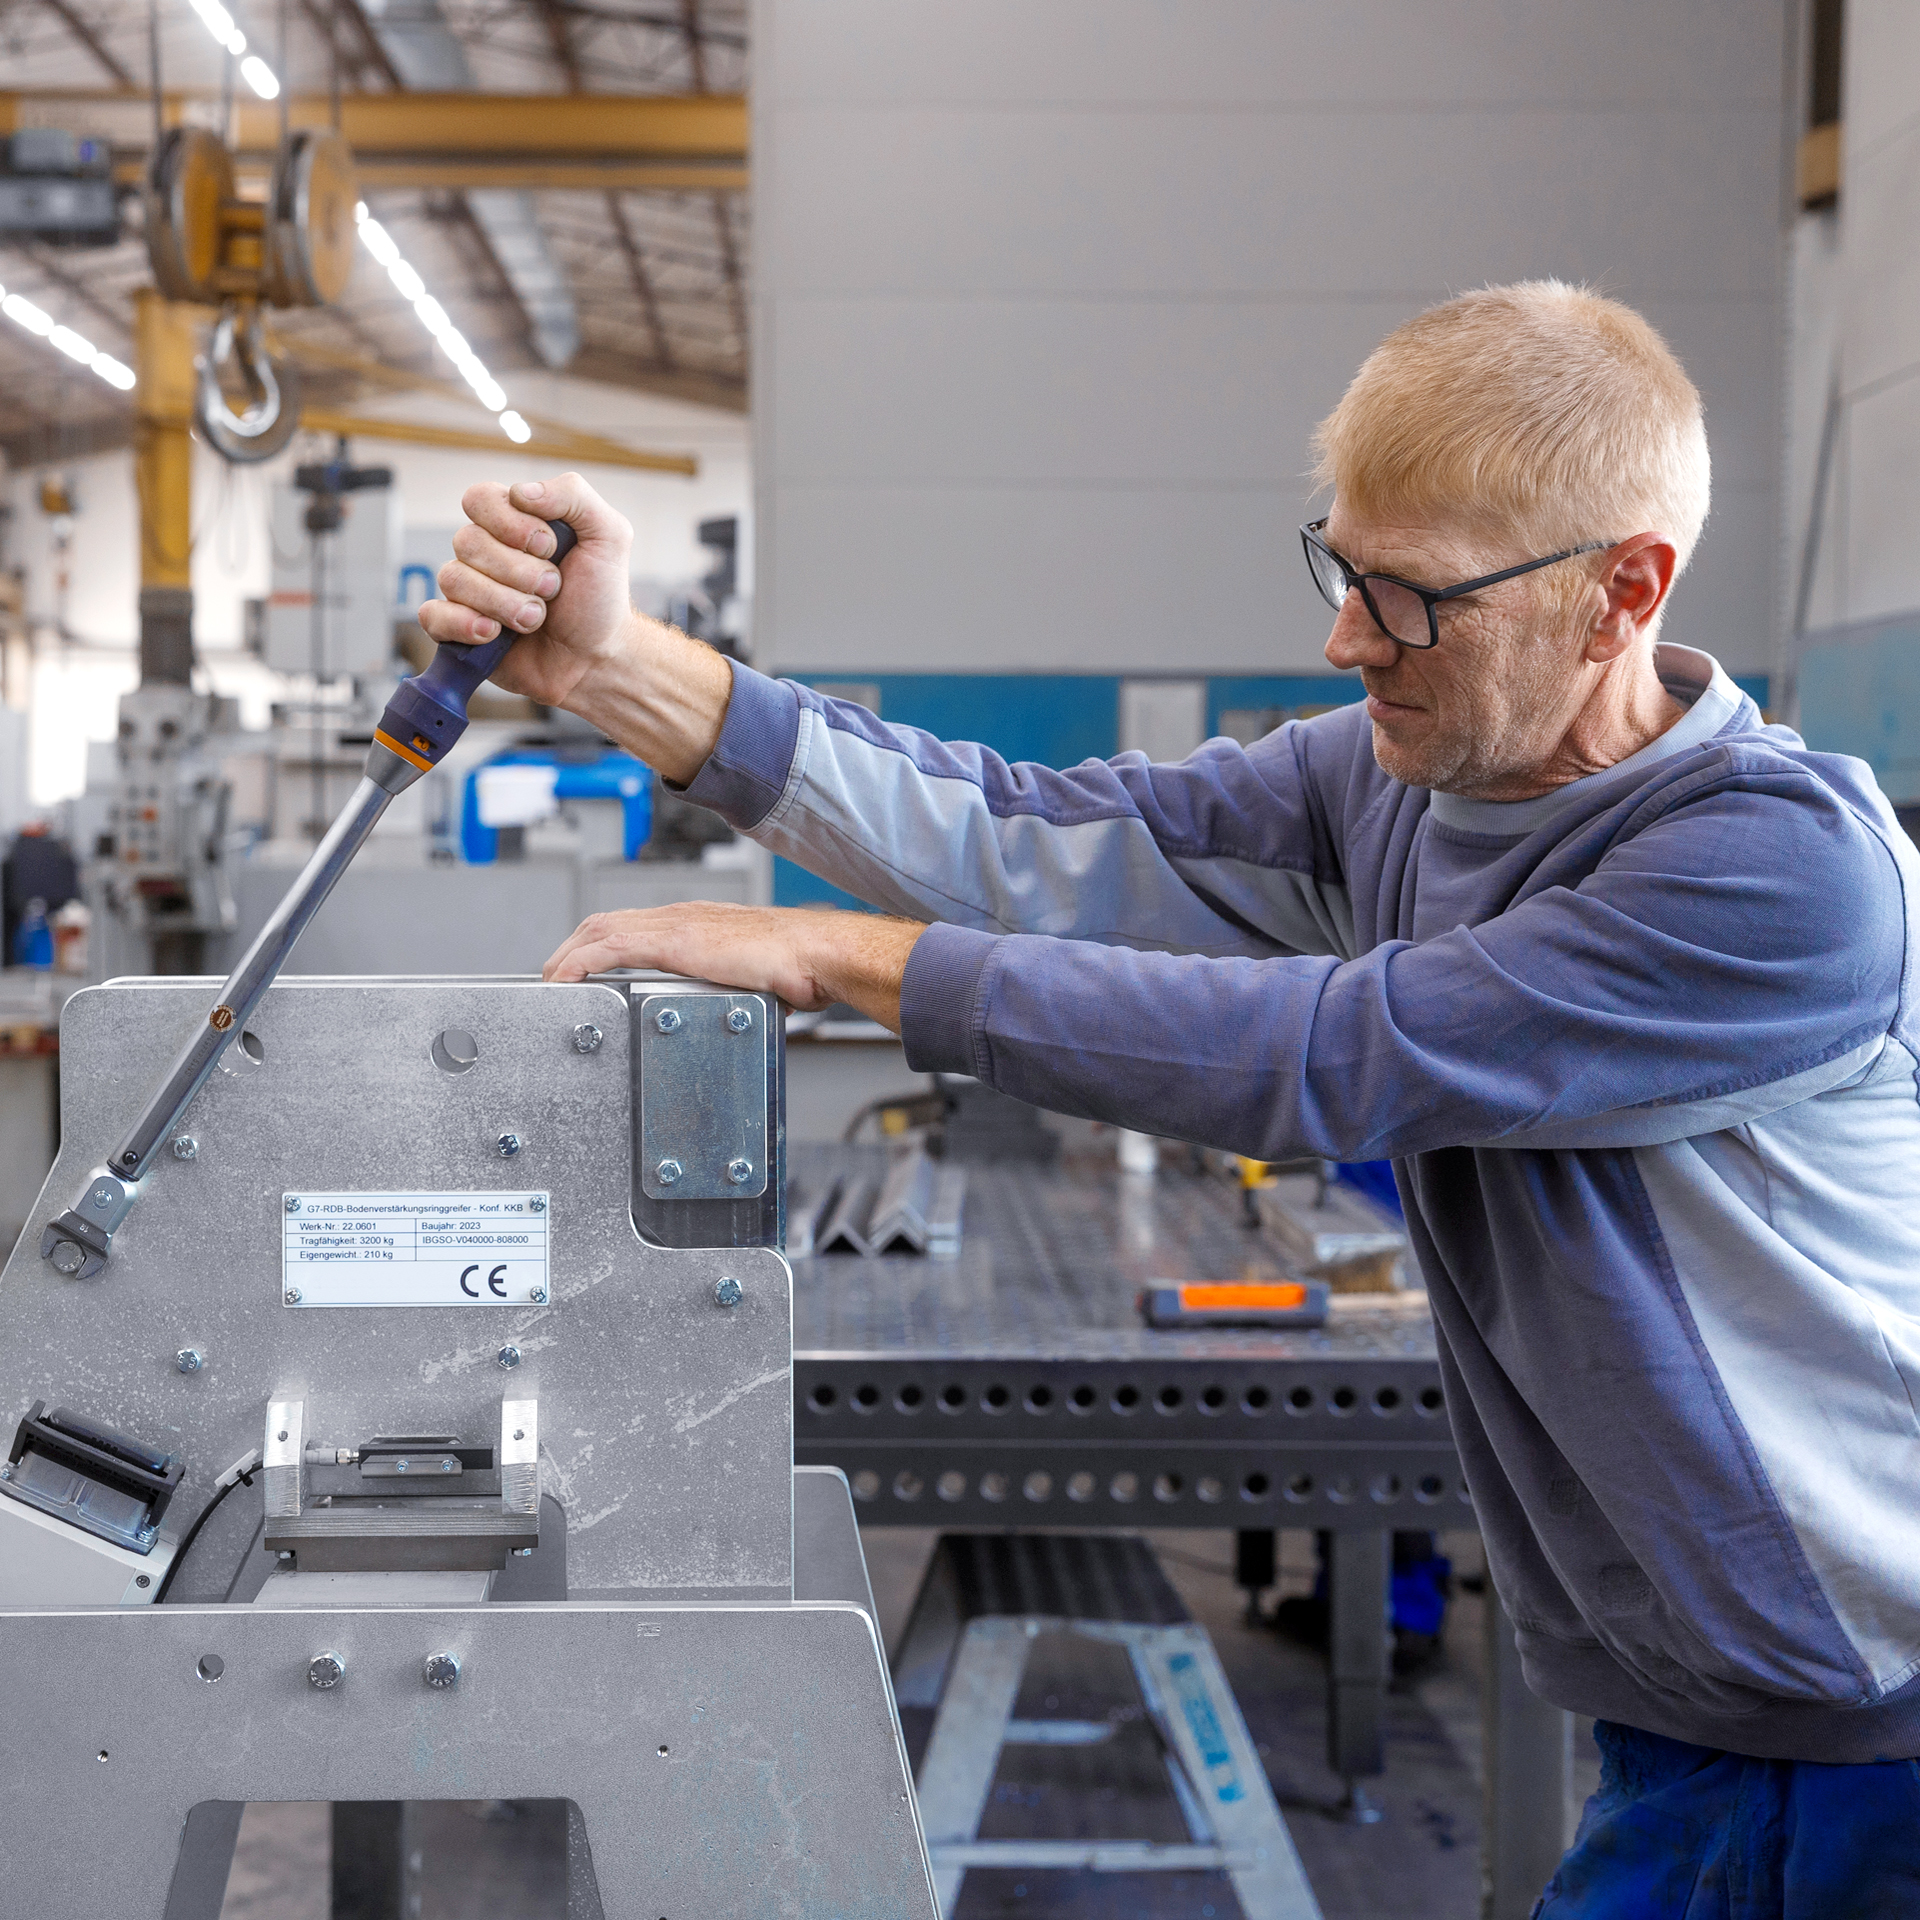 Freie Stellenangebote für Metallbauer im Maschinenbau von Leiritz.